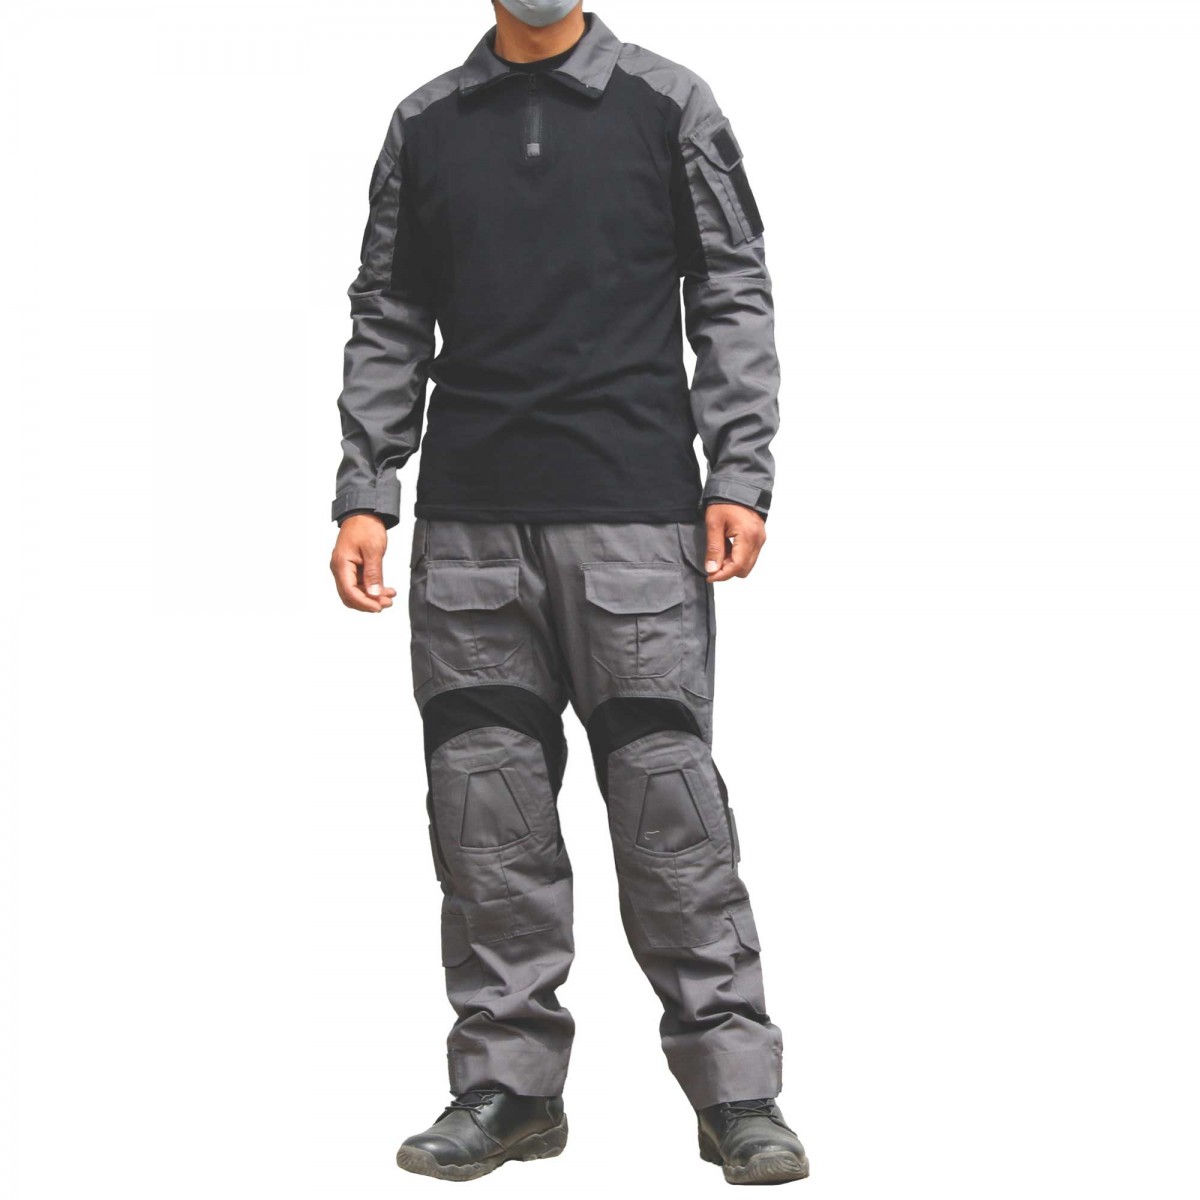 SHENKEL CRYEタイプ Gen3 コンバットシャツ パンツ セット グレー M/L (USサイズ) 長袖 迷彩服 上下 サバゲー